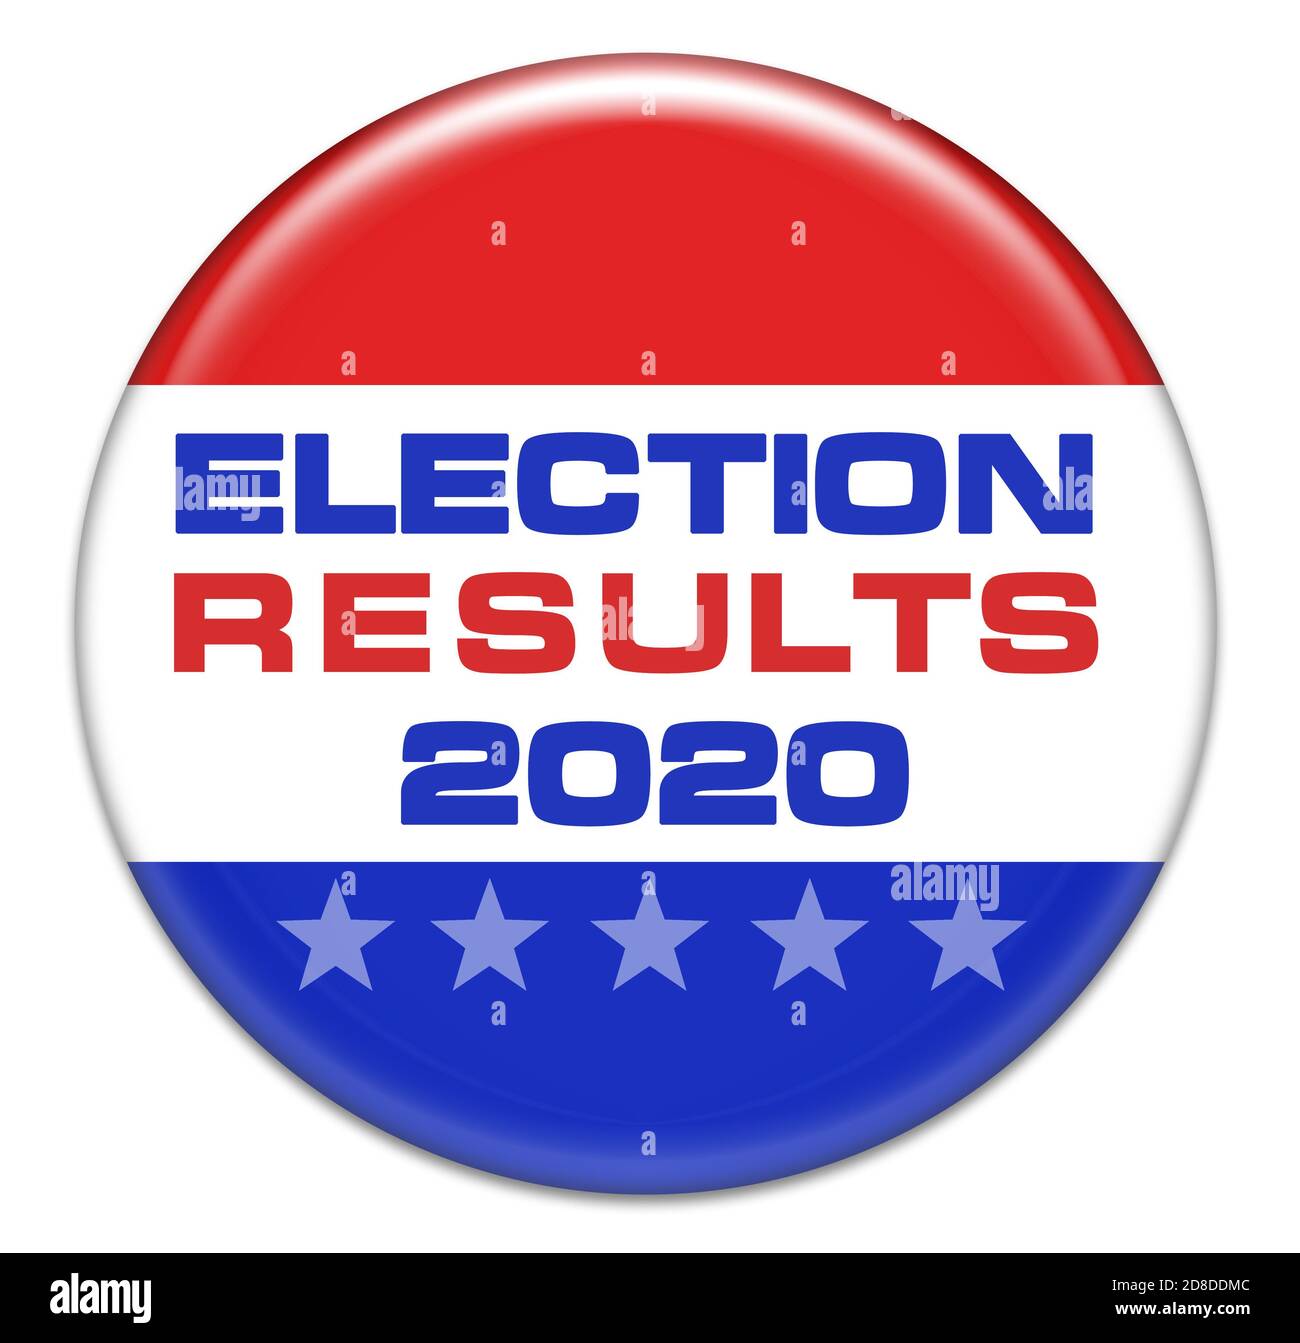 Resultados de la elección 2020 - botón de identificación Foto de stock